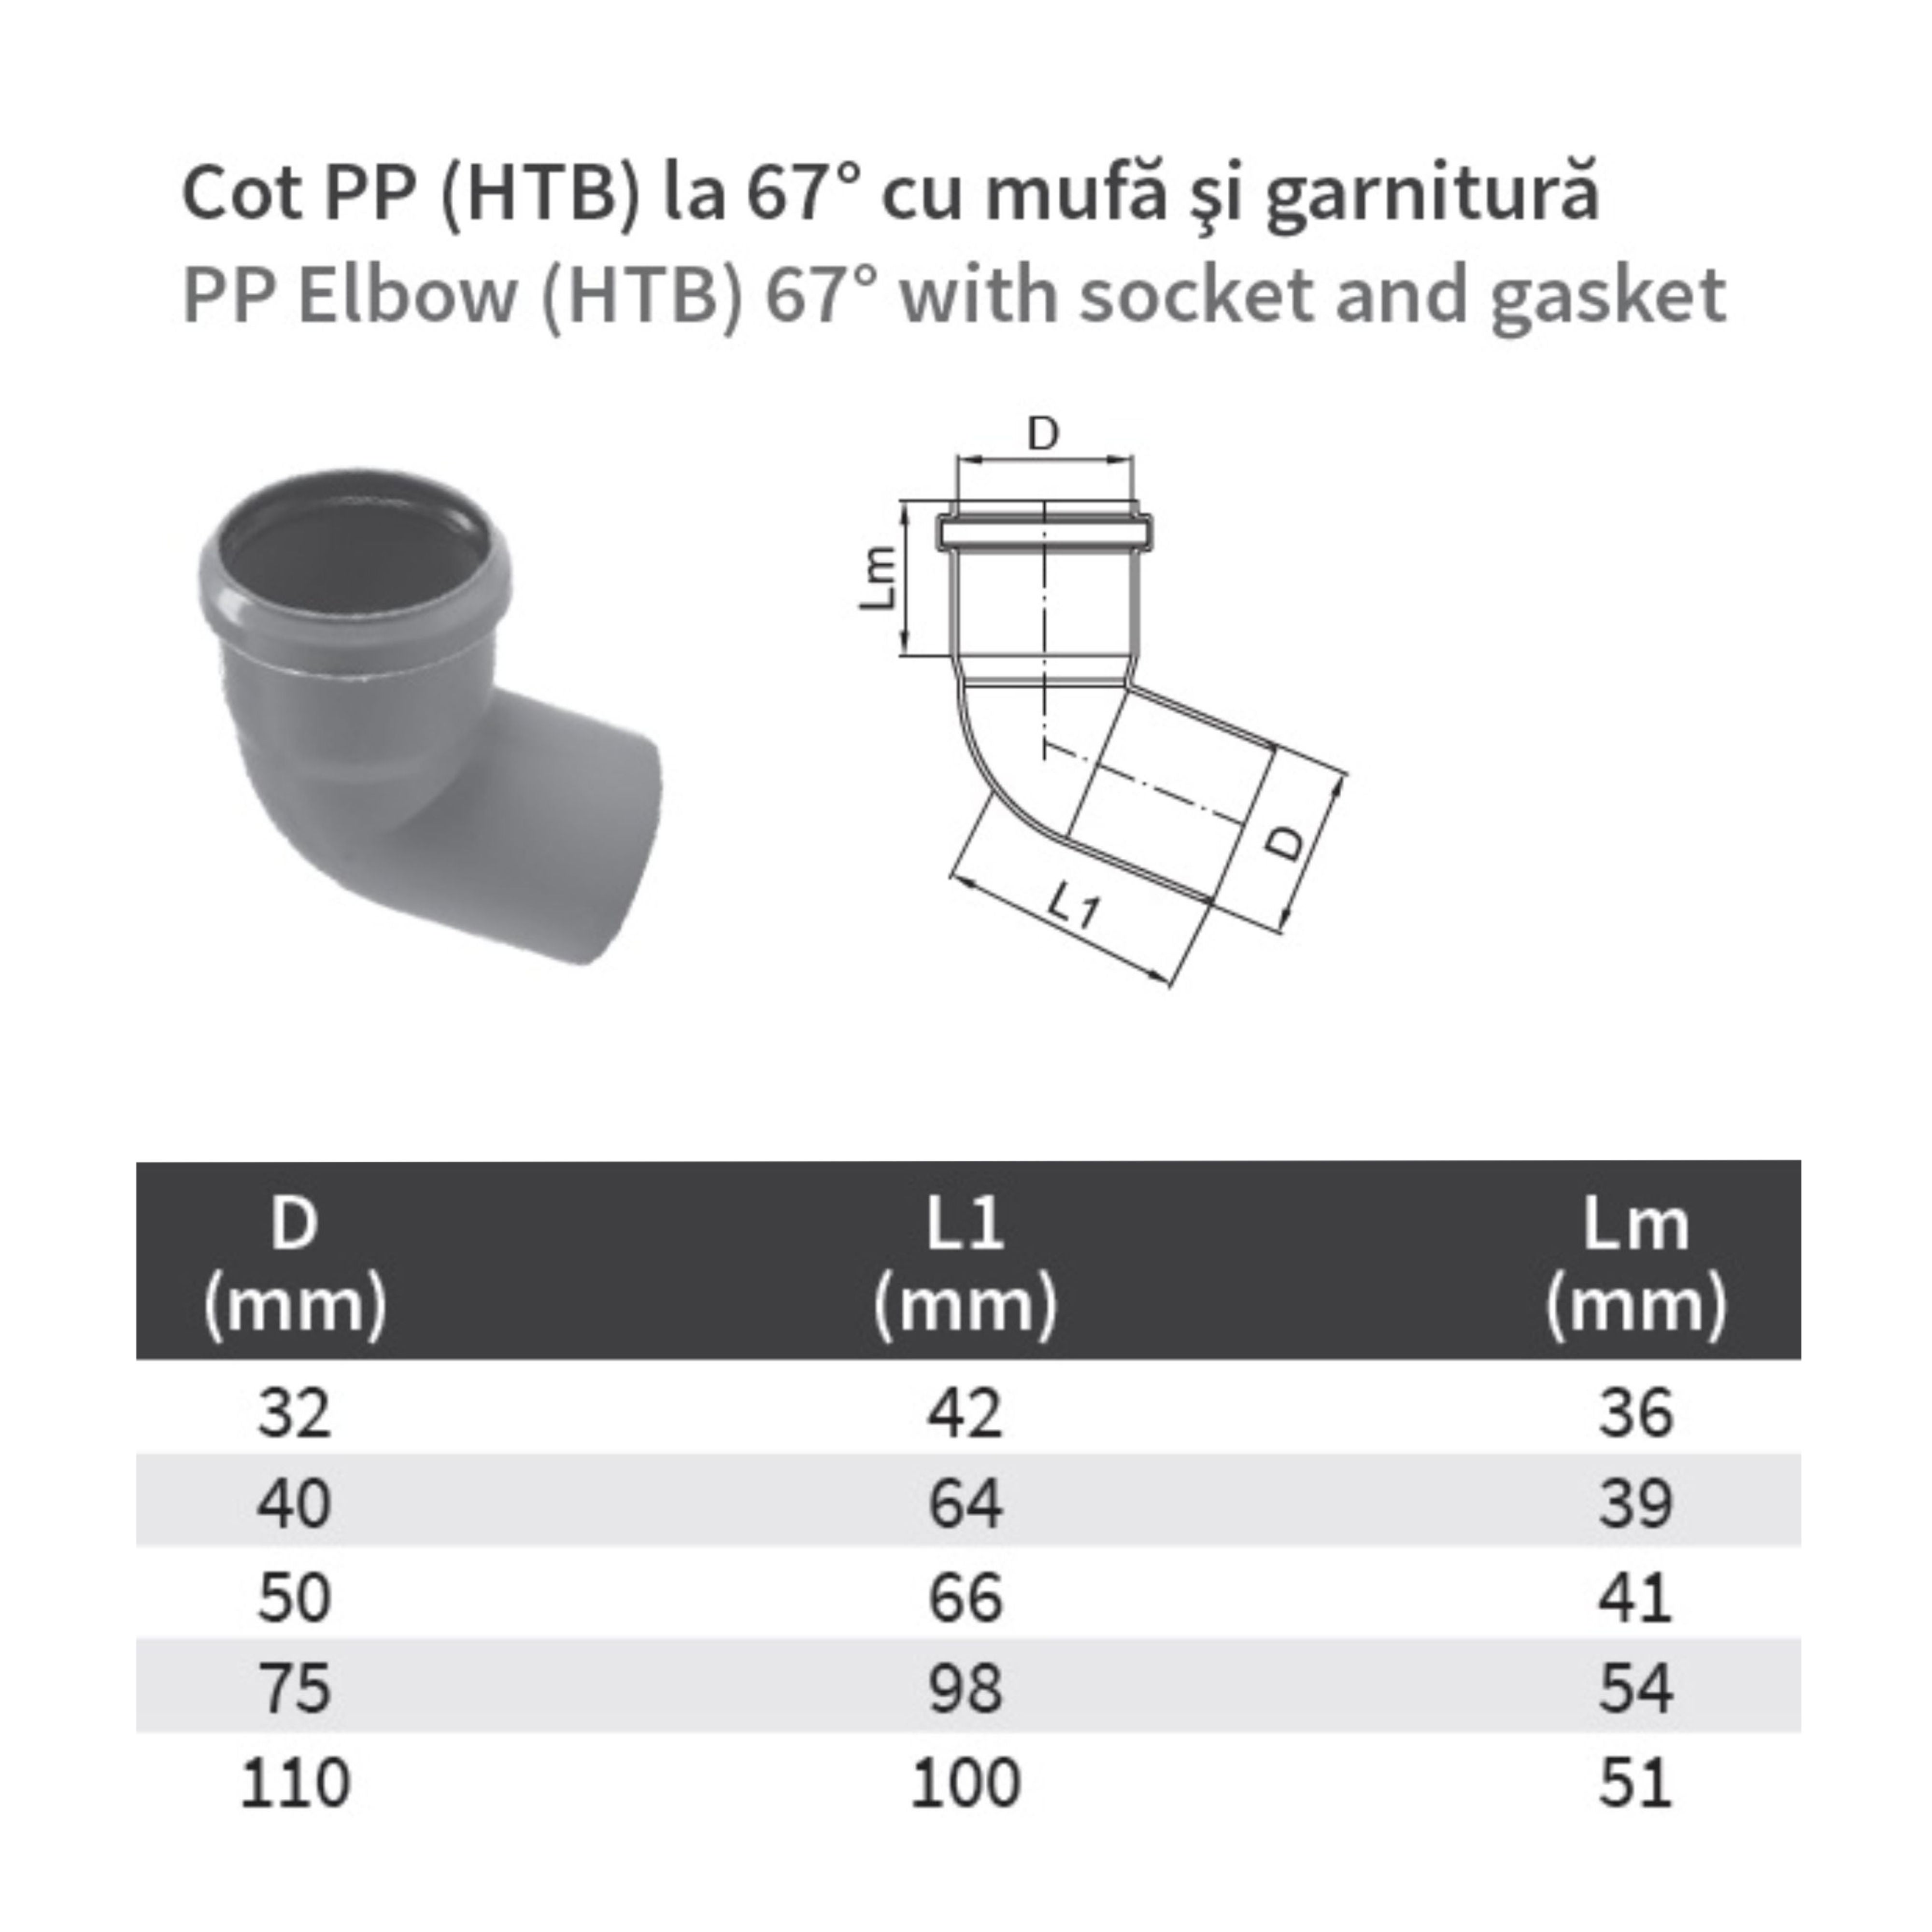 Cot PP HTB, pentru scurgere, D 75 mm, 67 grade